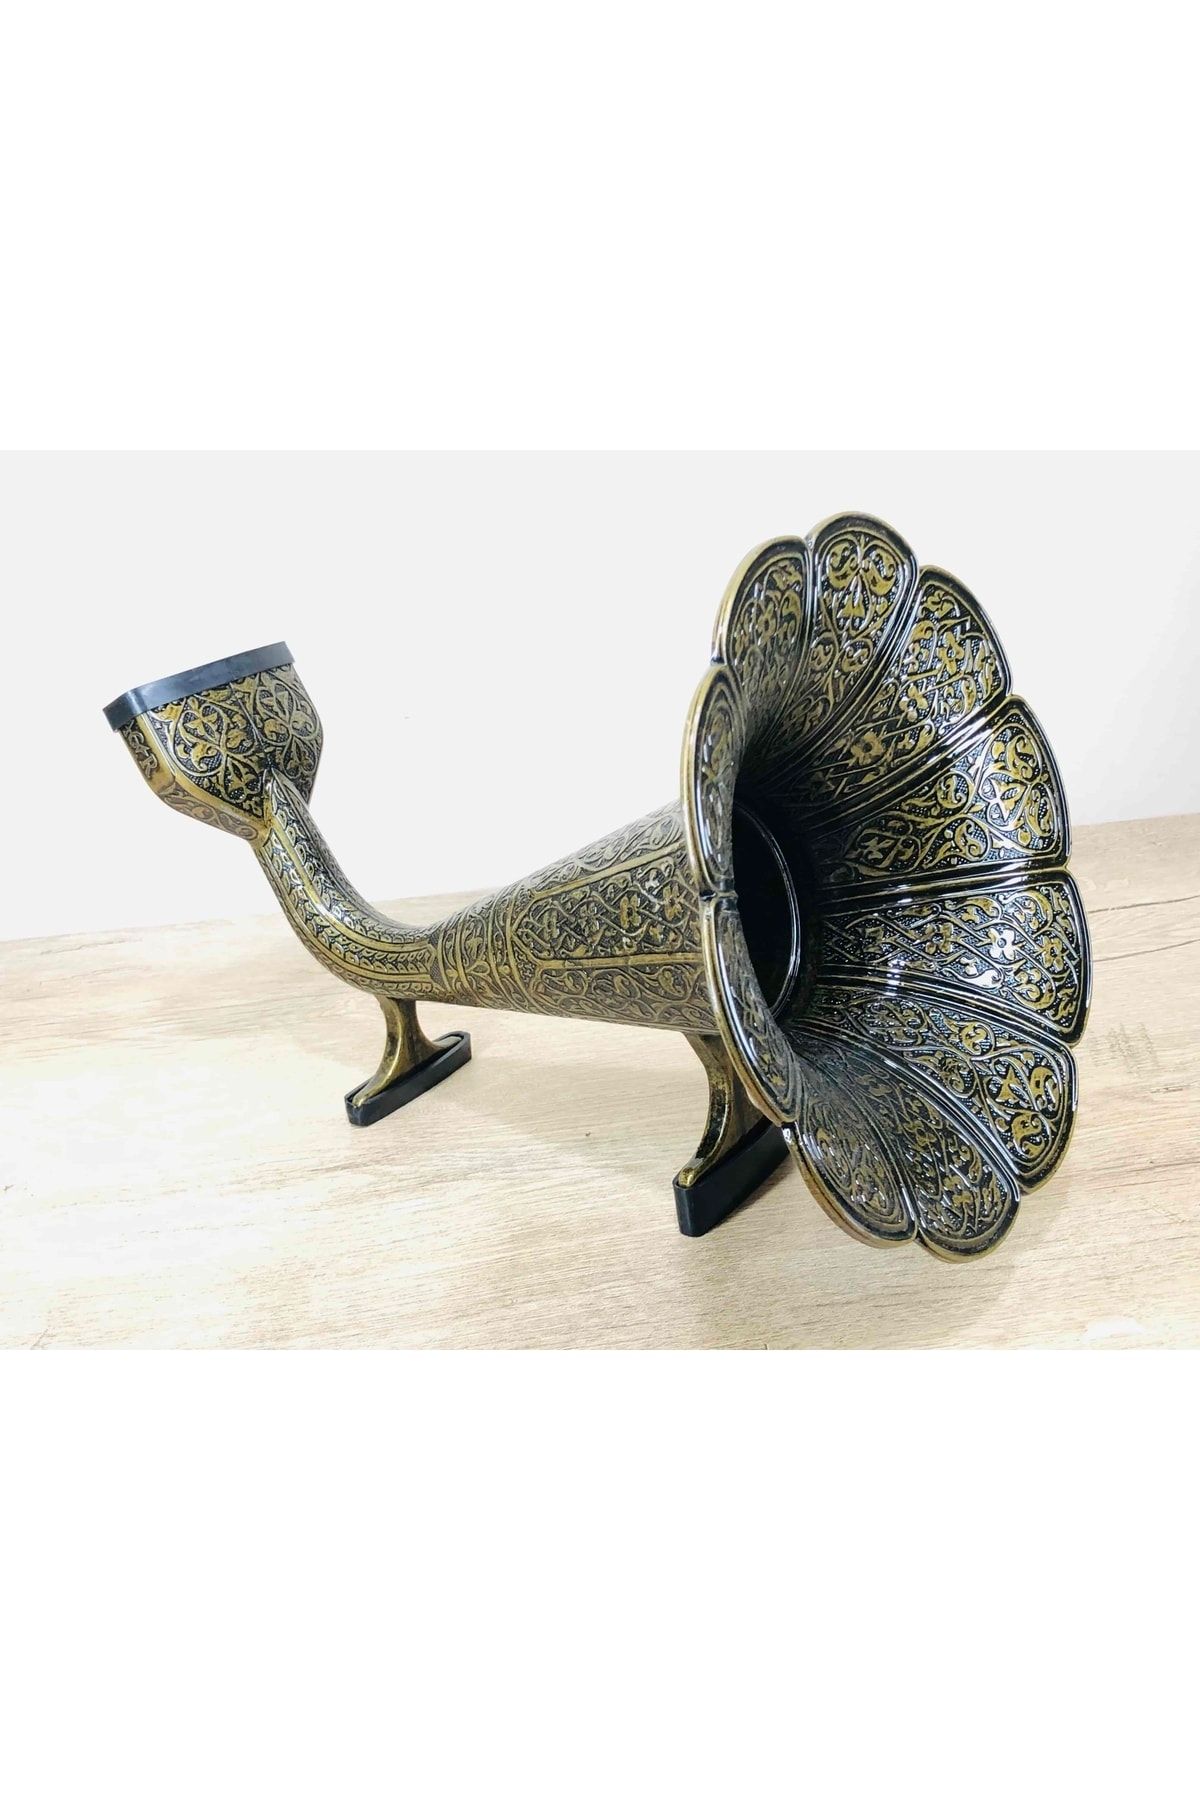 Kelepir Fırsatlar Dekoratif Osmanlı Stili Süslemeli Metal Gramofoni Cep Telefonu Ses Yükseltici Antik Altın Renk